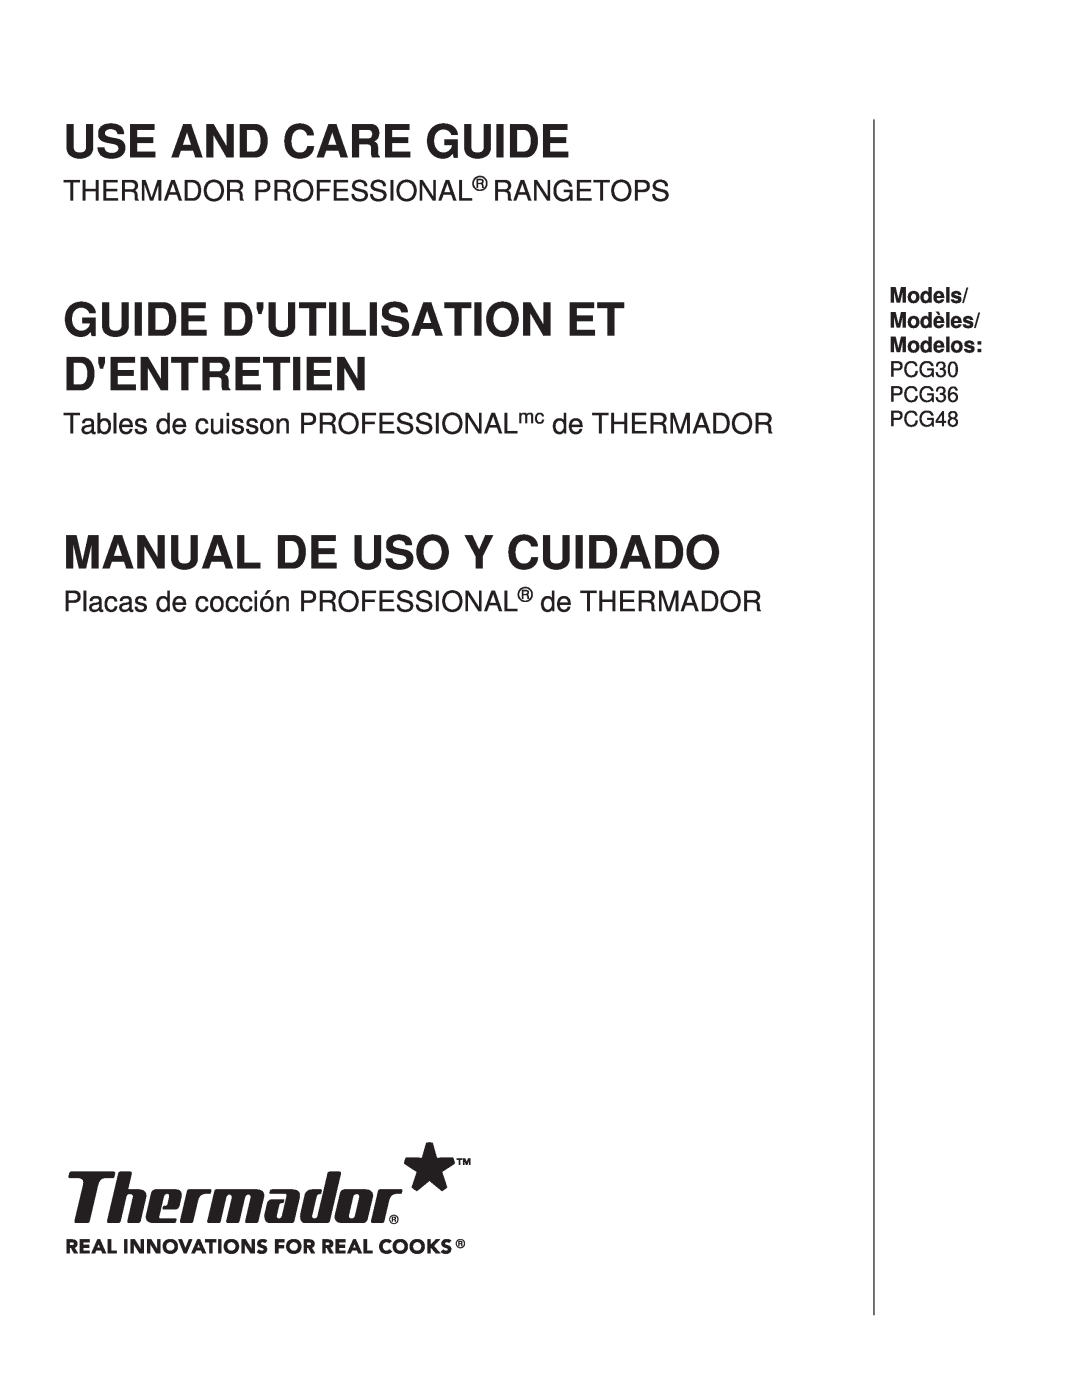 Thermador manual Use And Care Guide, Guide Dutilisation Et Dentretien, Manual De Uso Y Cuidado, PCG30 PCG36 PCG48 